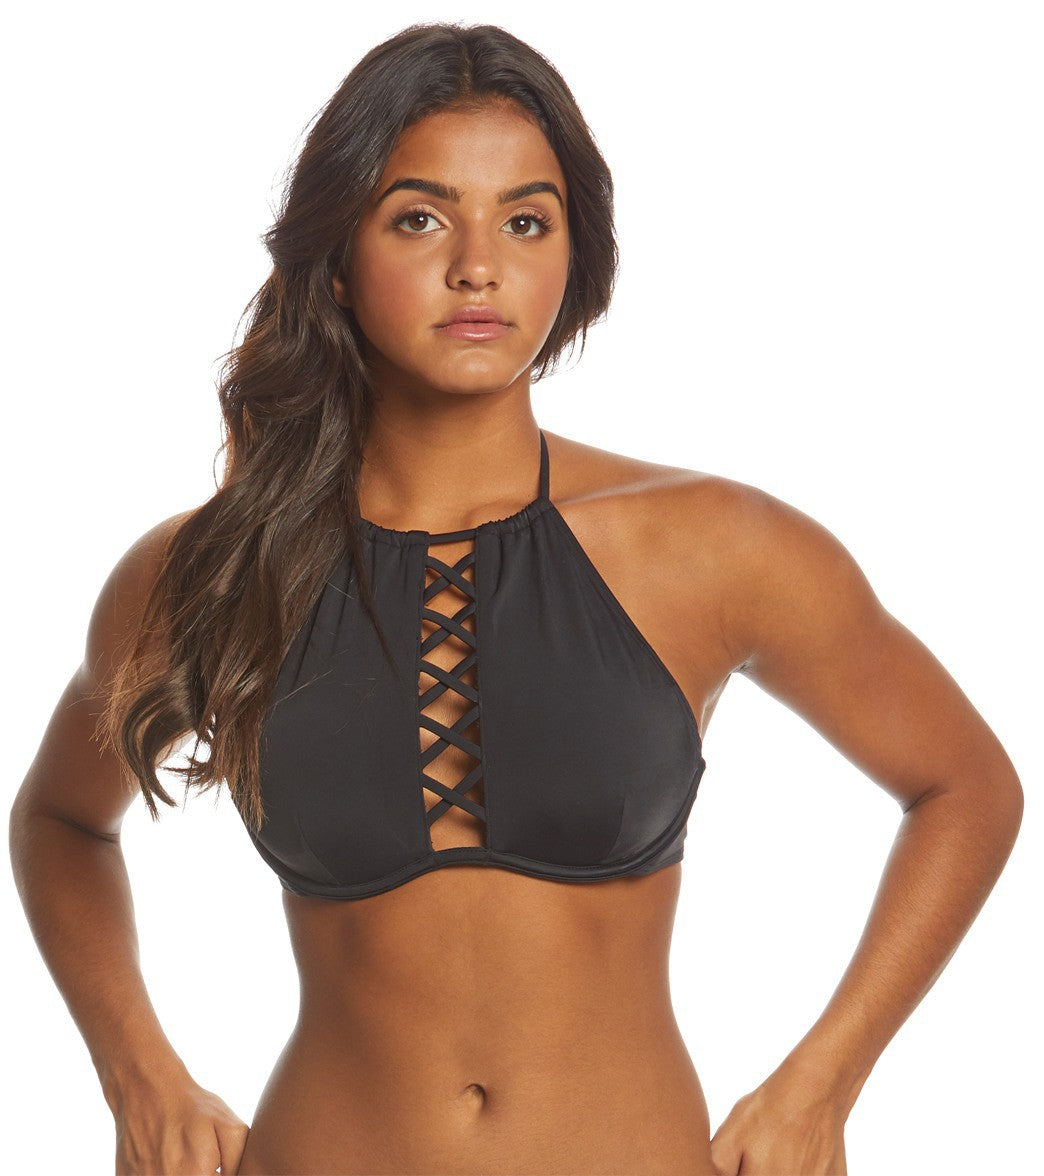 Roxy Love The Coco underwire bikini top in black & white tropical print